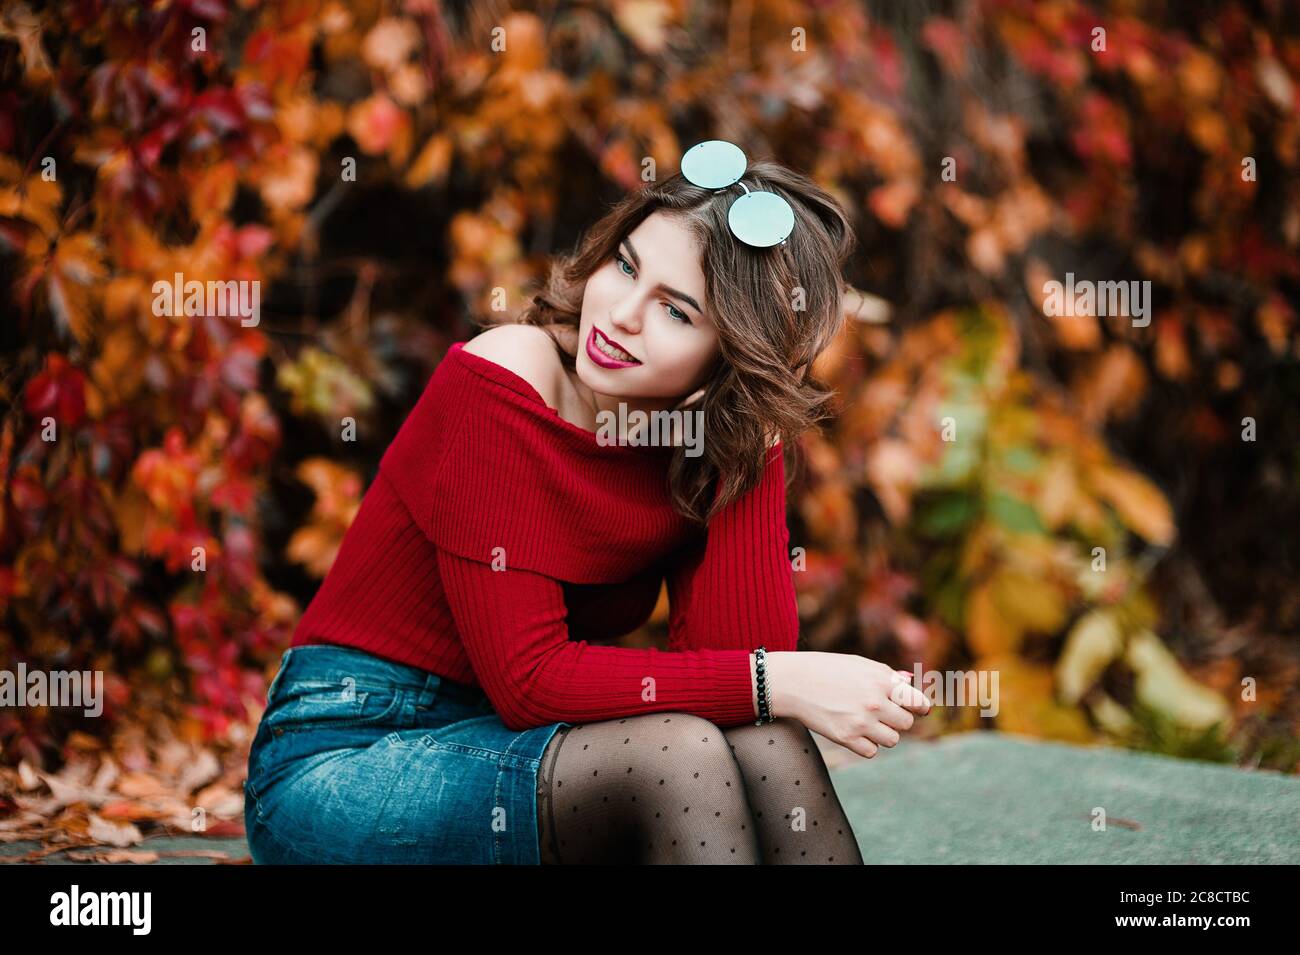 Belle jeune femme décontractée en lunettes assis parmi les feuilles jaunes et rouges dans le parc public, couleurs d'automne fond Banque D'Images